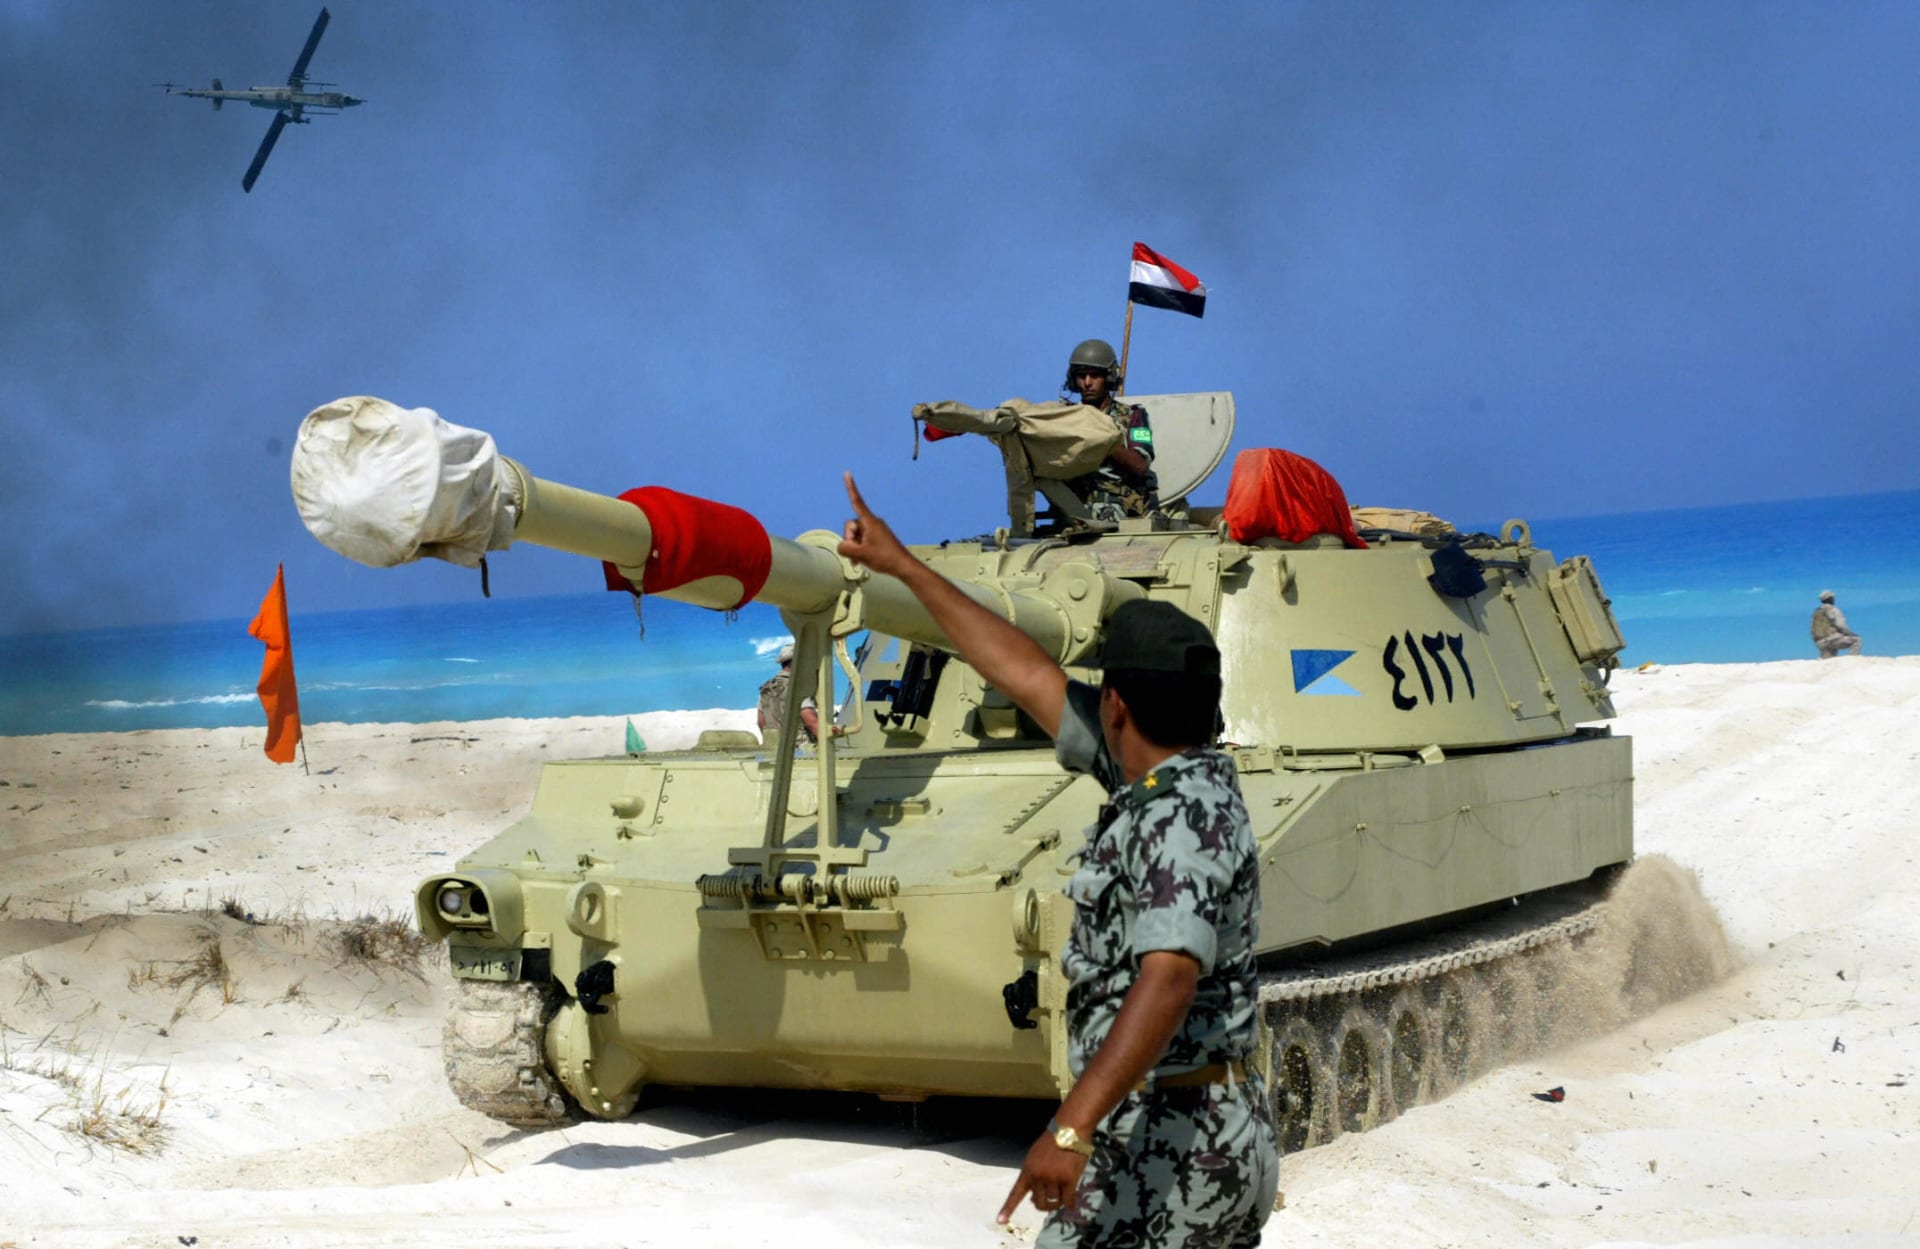 أمريكا تشارك في تدريبات "النجم الساطع" العسكرية مع مصر لأول مرة منذ الإطاحة بمبارك